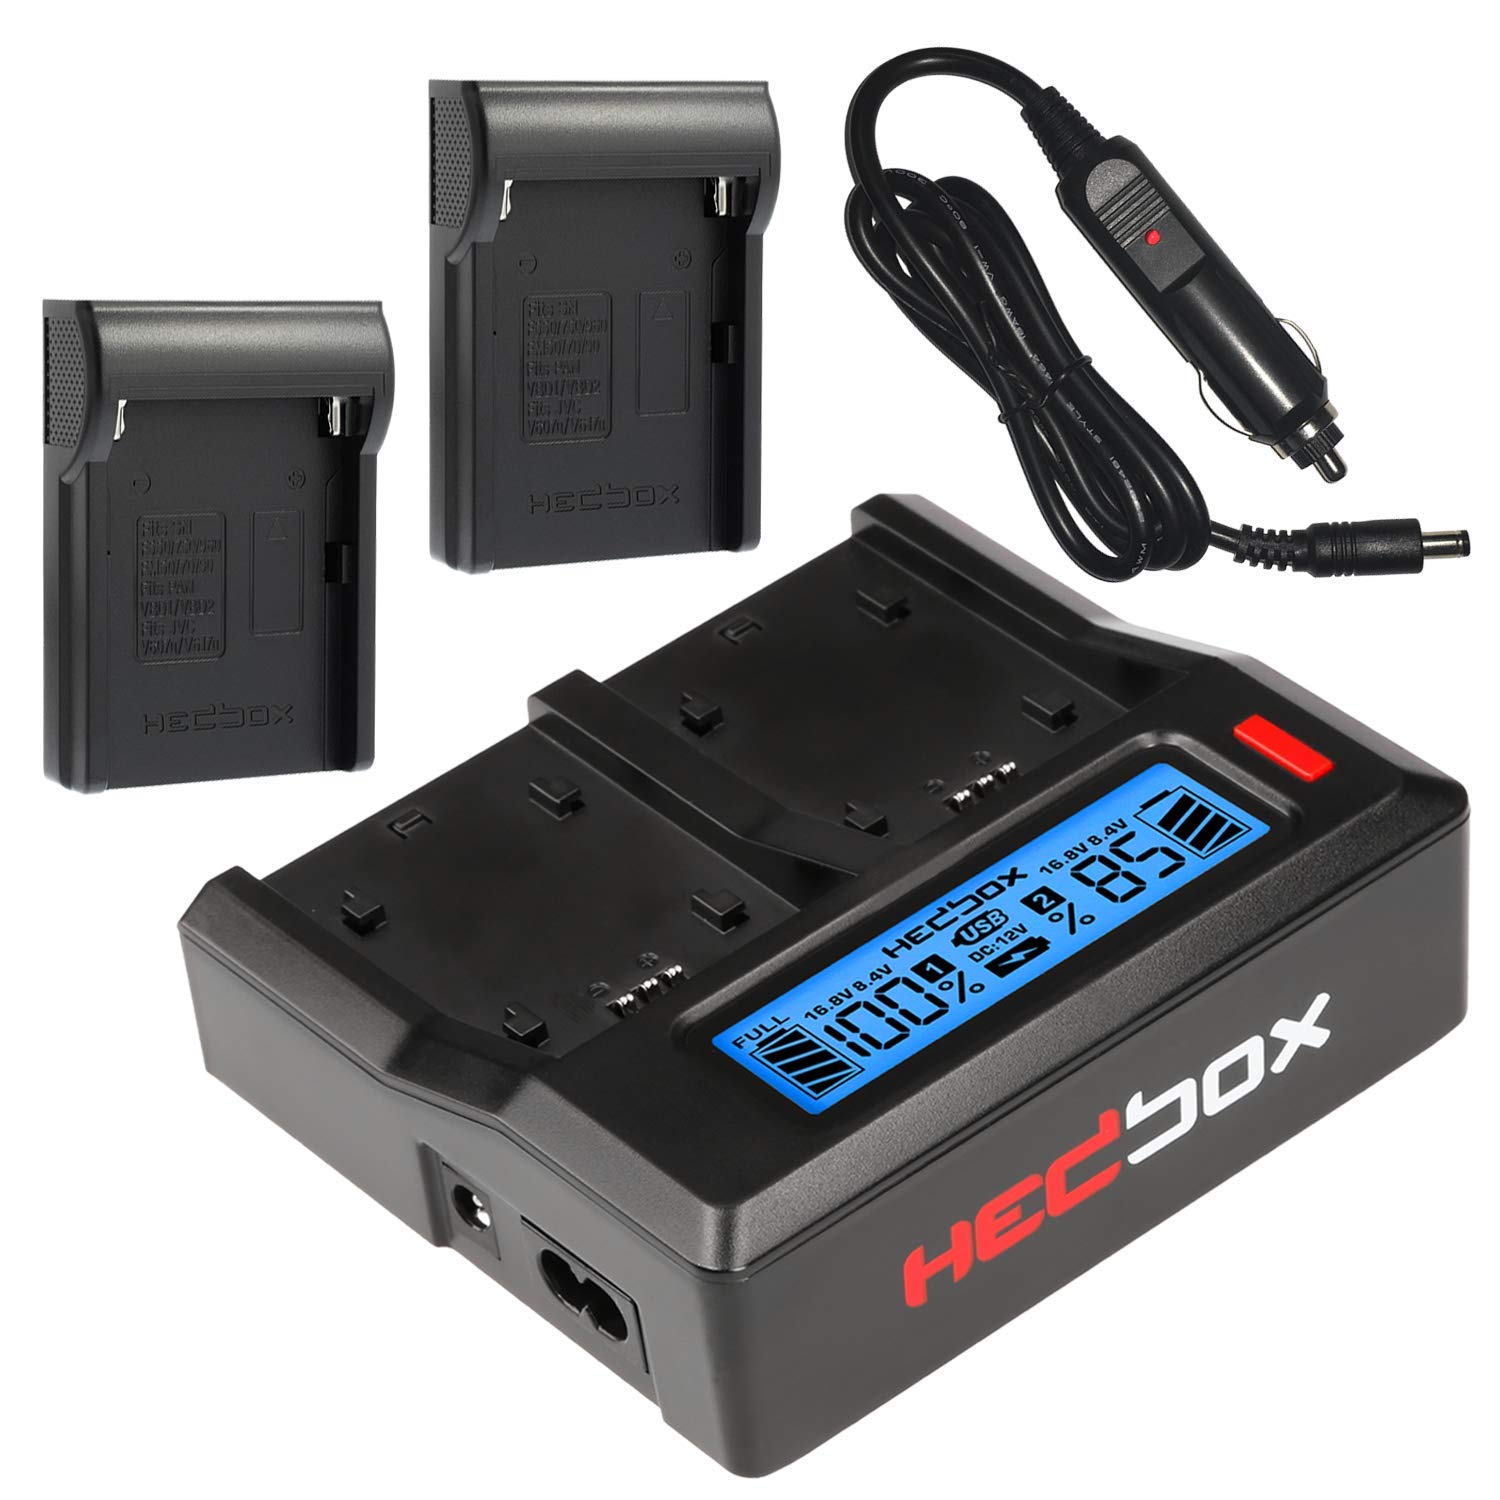 HEDBOX RP-DC50/DFM50-2-Fach Ladegerät mit LCD für Sony NP- F550, F770, F970, und Hedbox RP- NPF550, NPF770, NPF970, NPF1000